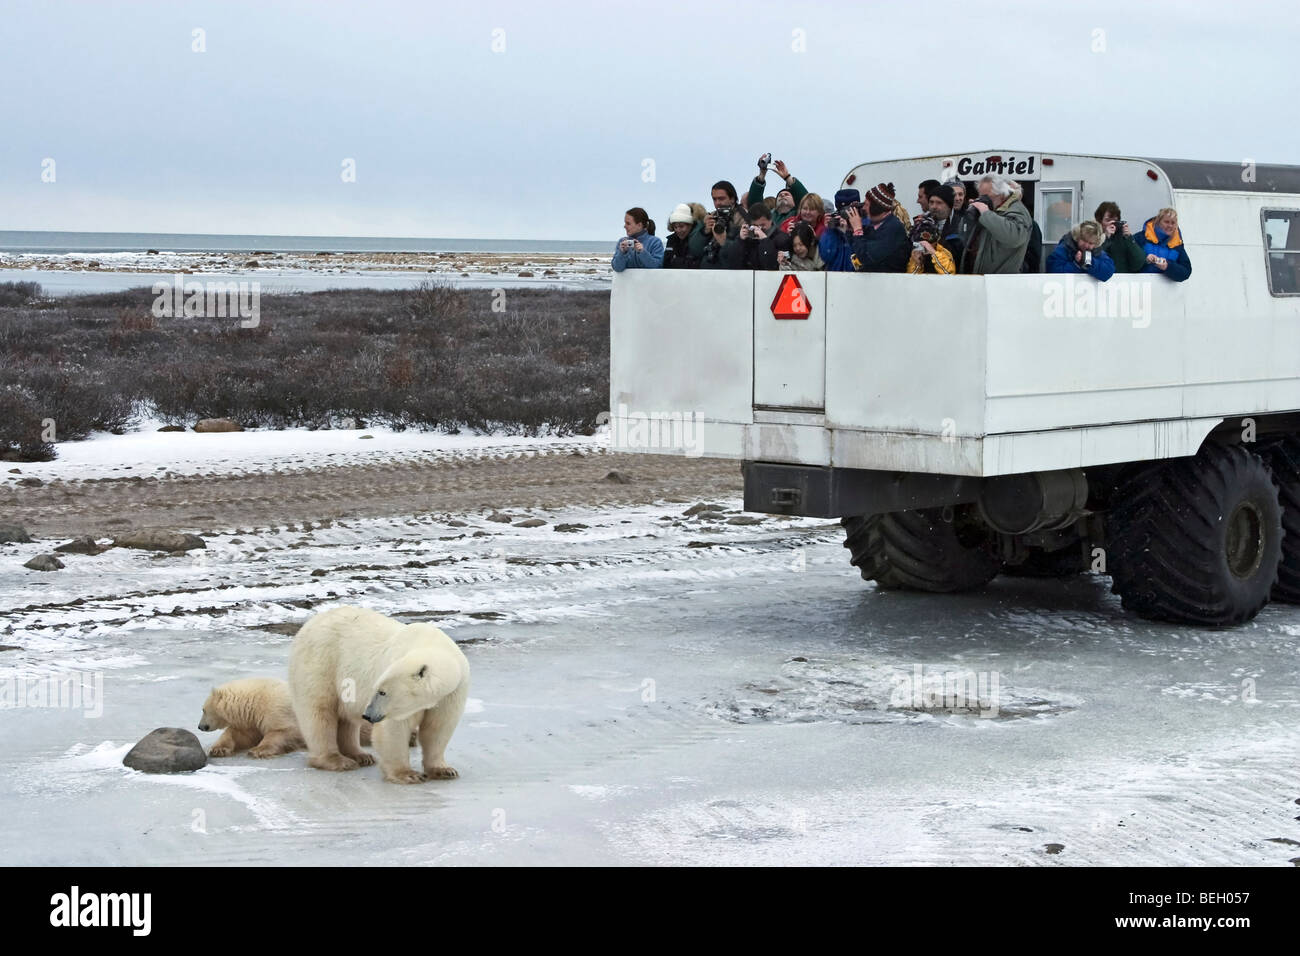 Tundra Buggy verwendet, um Touristen auf der gefrorenen Tundra Eisbären beobachten Stockfoto